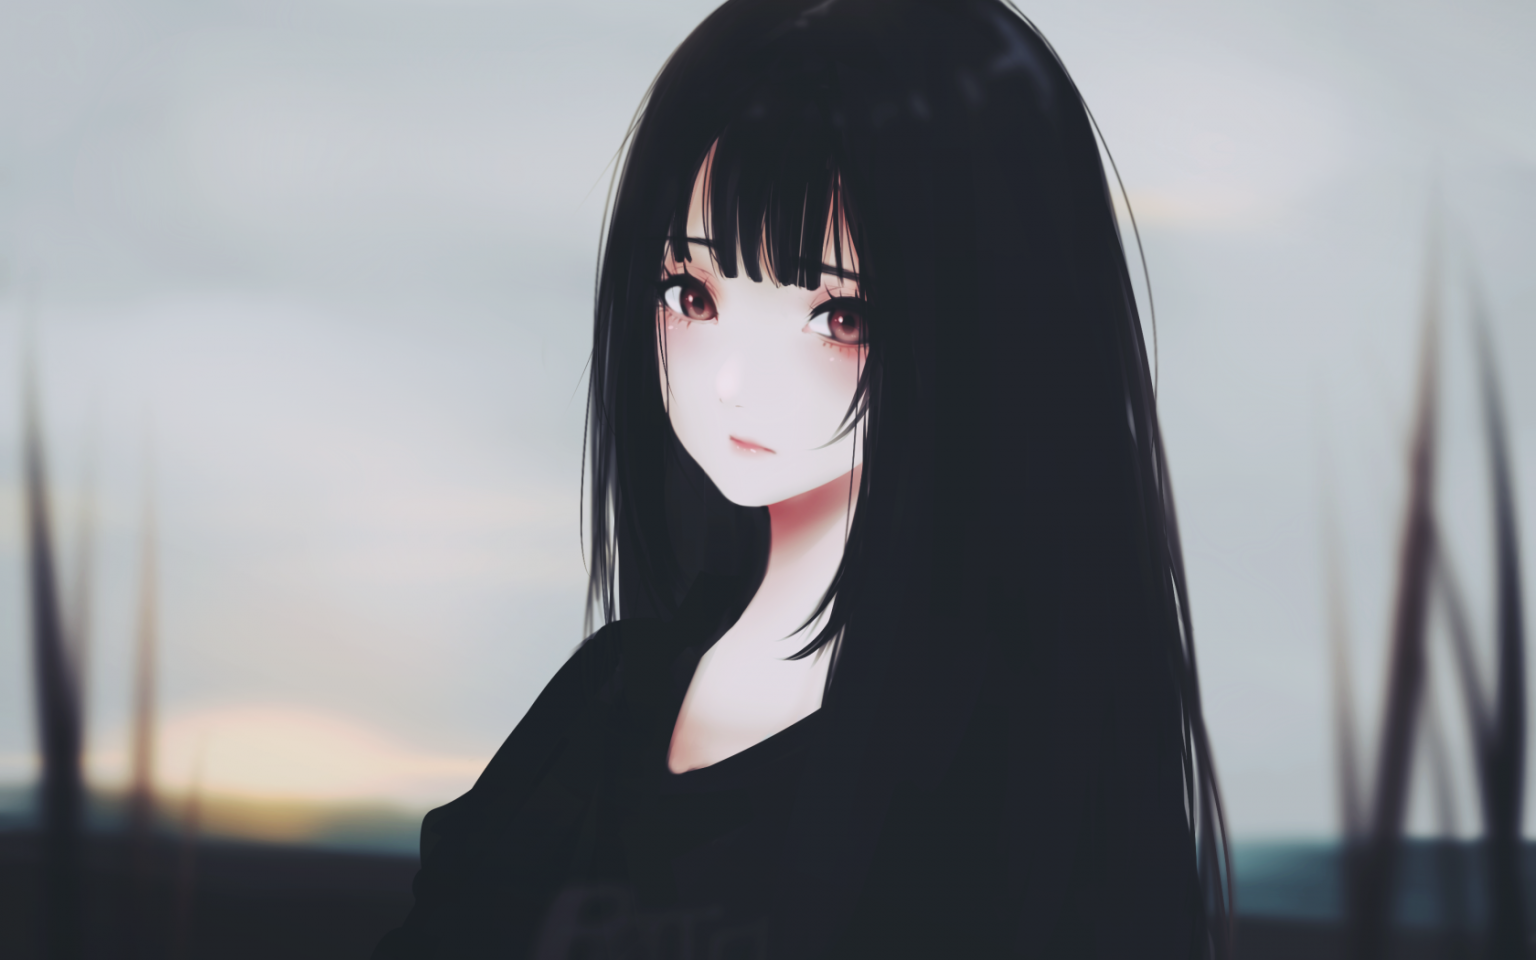 Aesthetic Anime Girl With Black Hair Maxipx